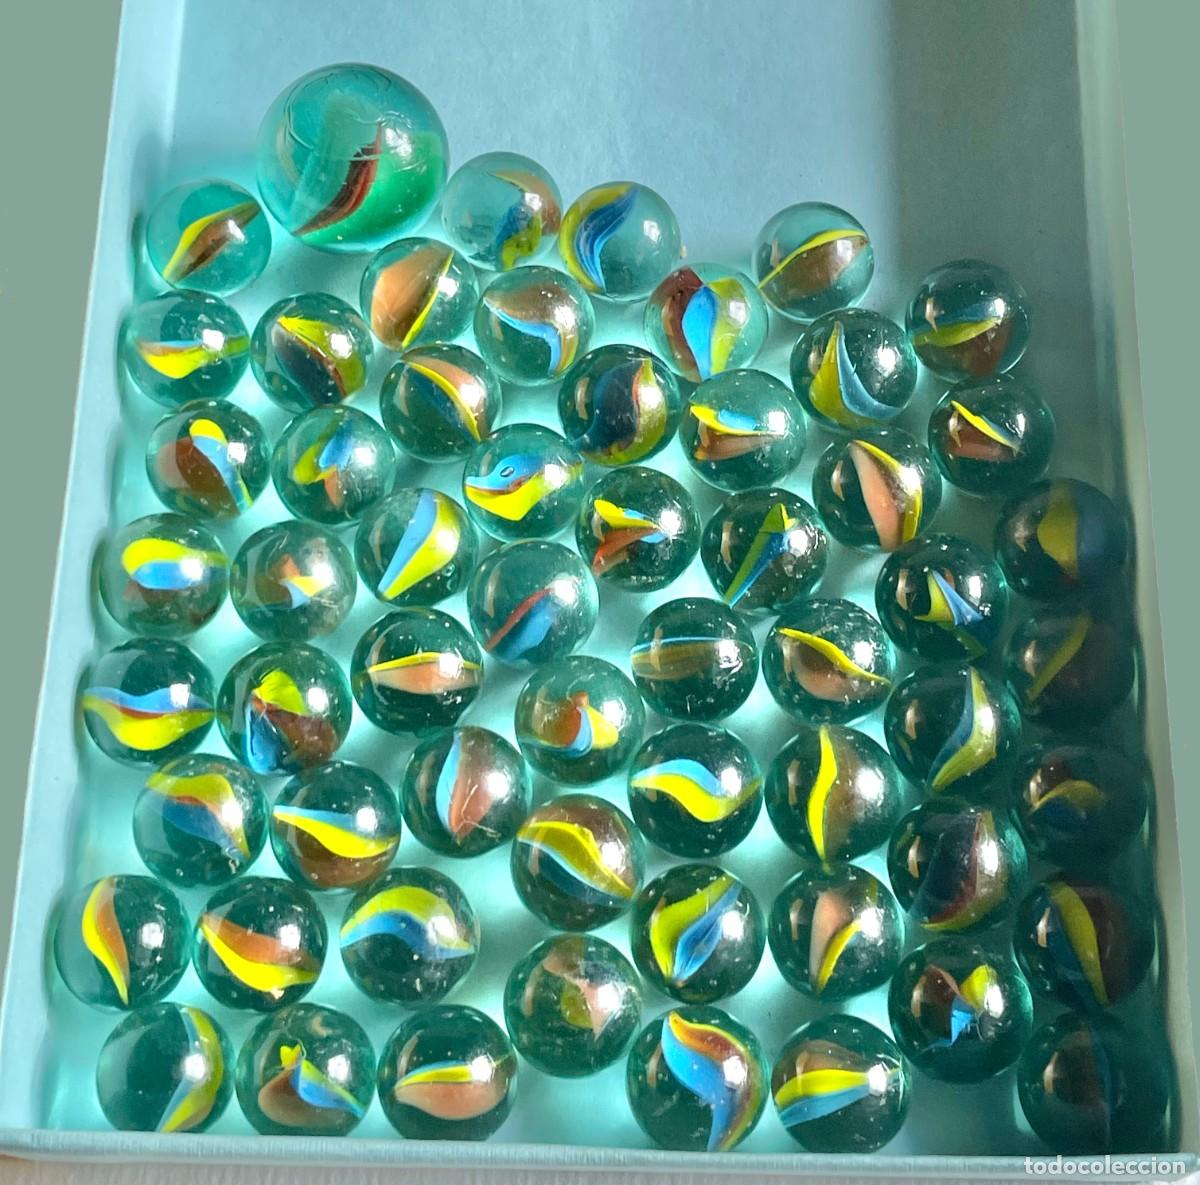 lote de 58 canicas de cristal - Compra venta en todocoleccion